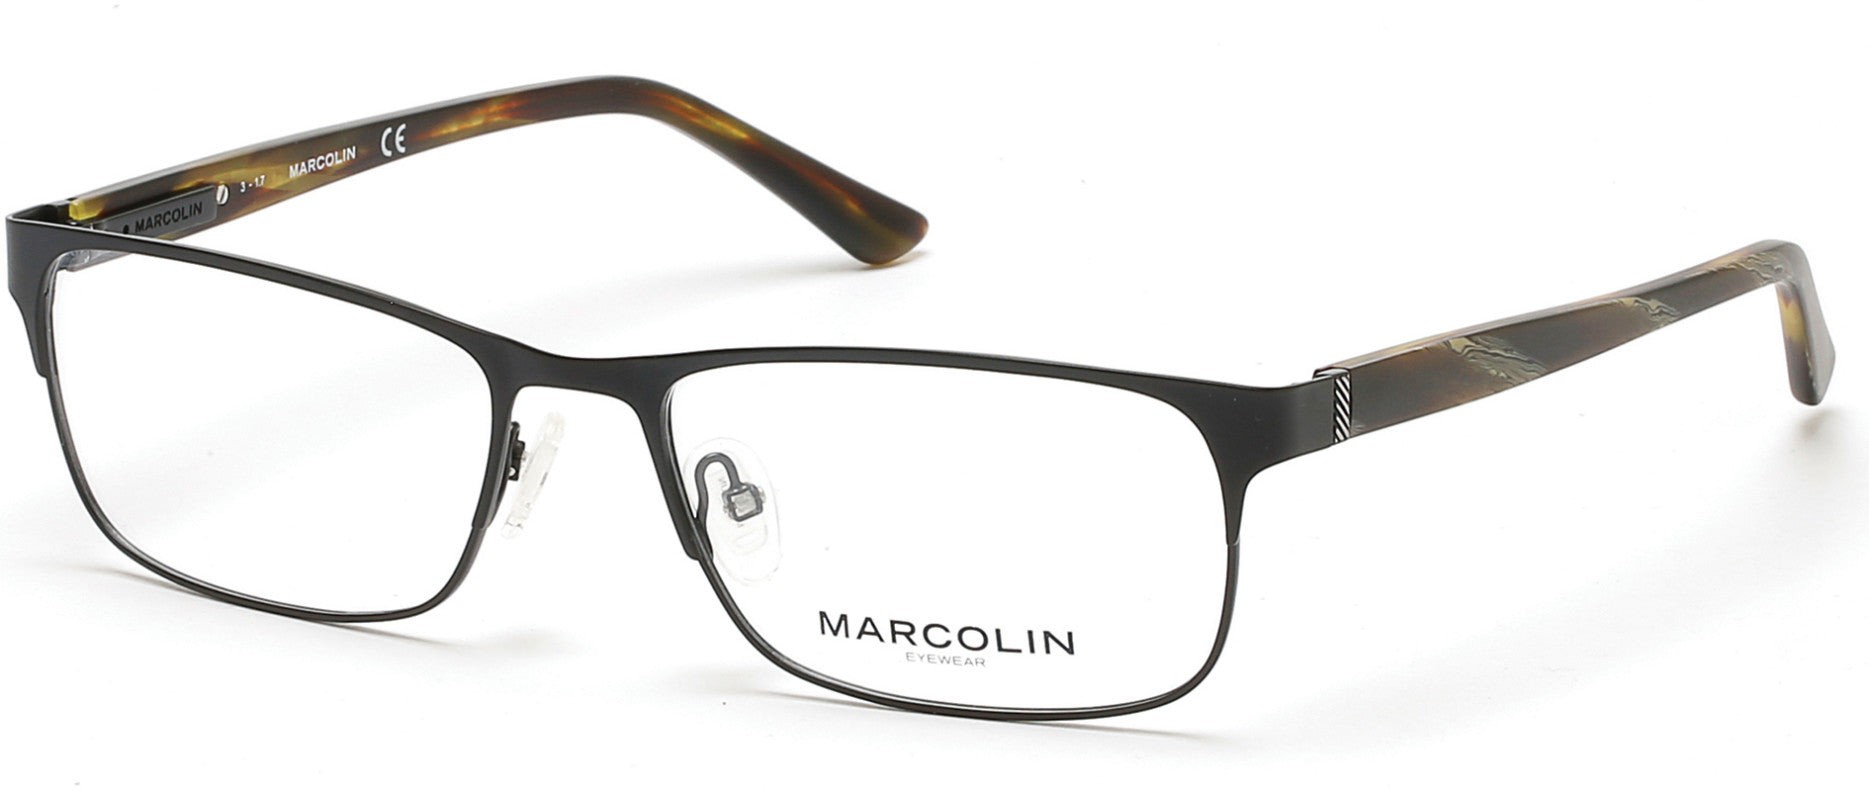 Marcolin MA3010 Eyeglasses 002-002 - Matte Black